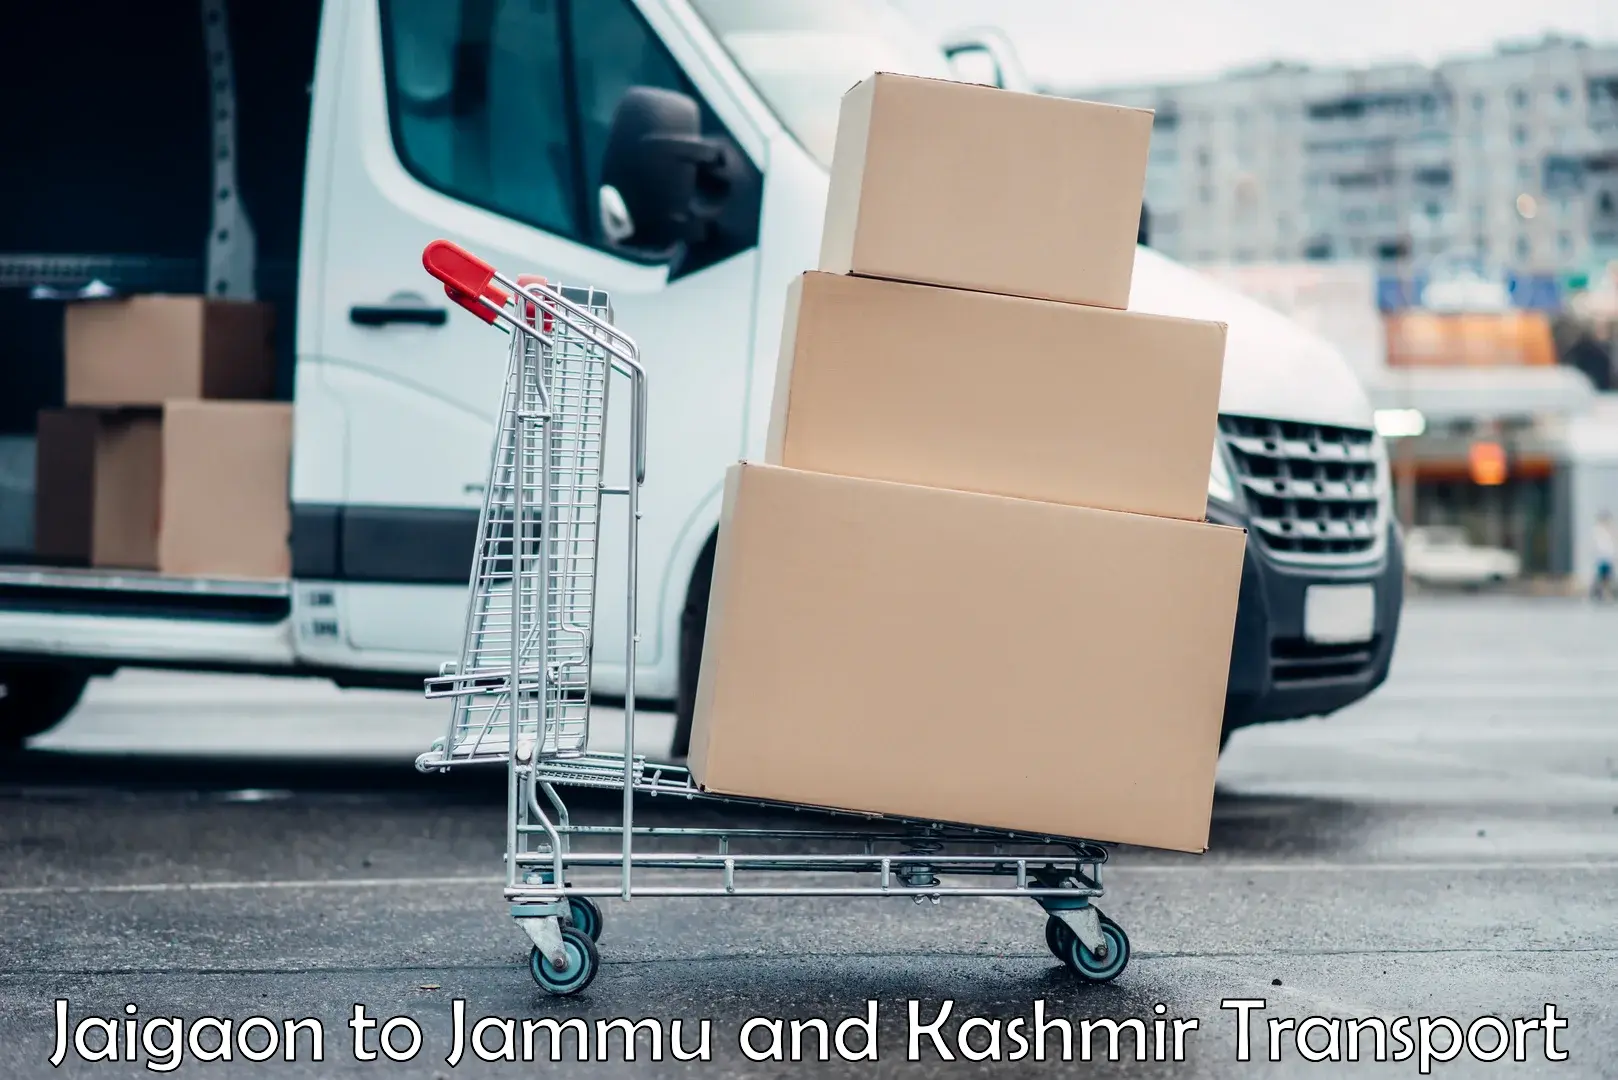 Road transport online services Jaigaon to Kargil